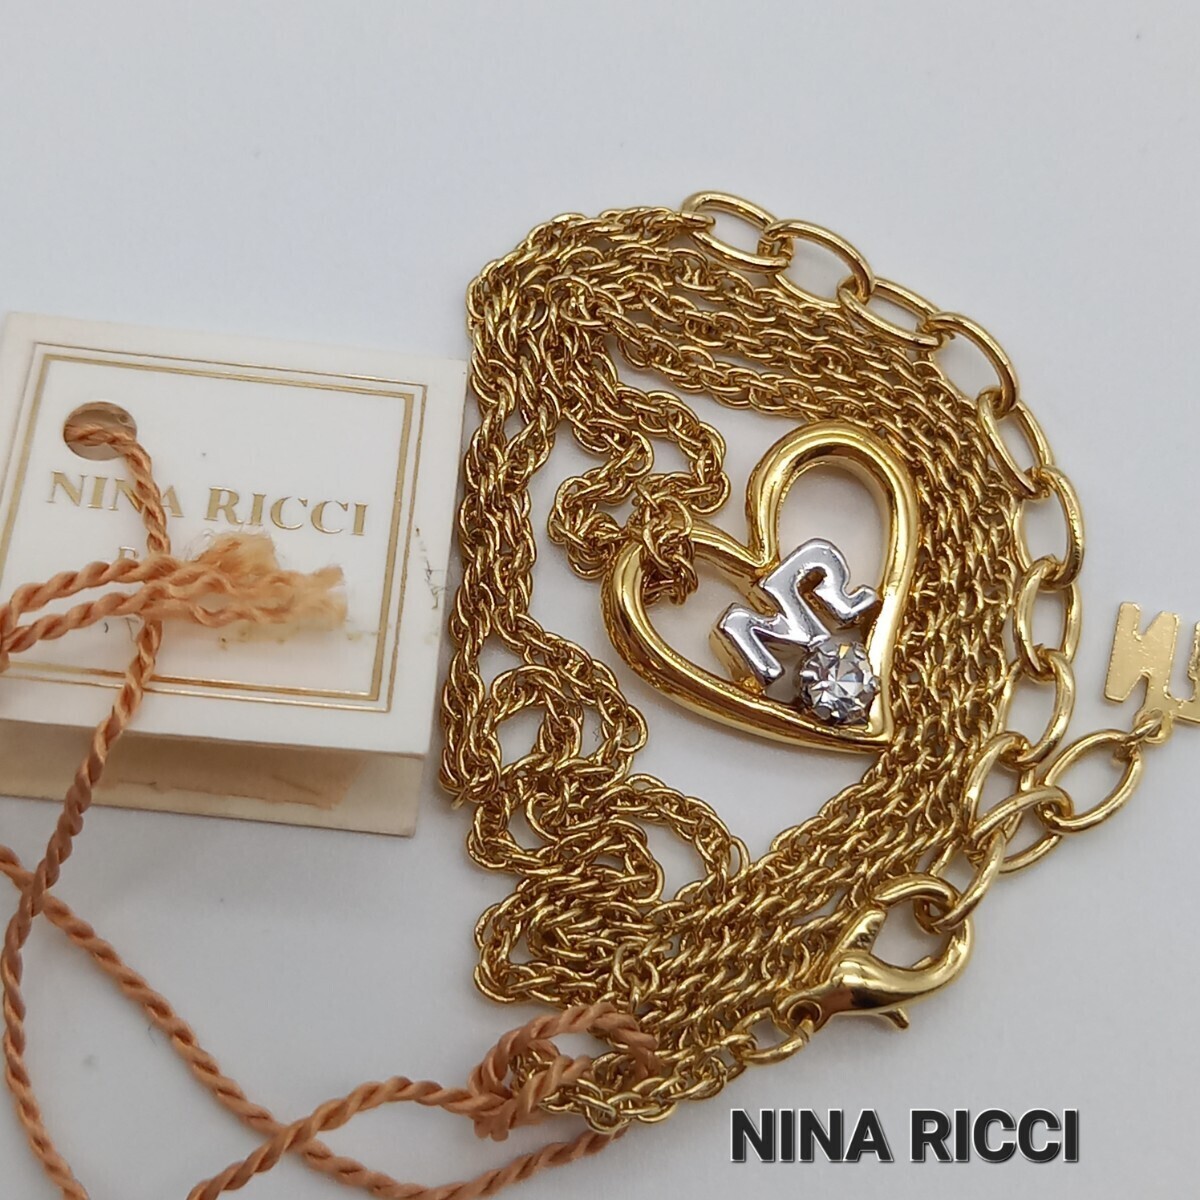 1 jpy ANNE KLEIN CAROLEE NINA RICCI MONET ORENA necklace earrings brooch Anne Klein Nina Ricci monekyaro Lee o Rena pearl 